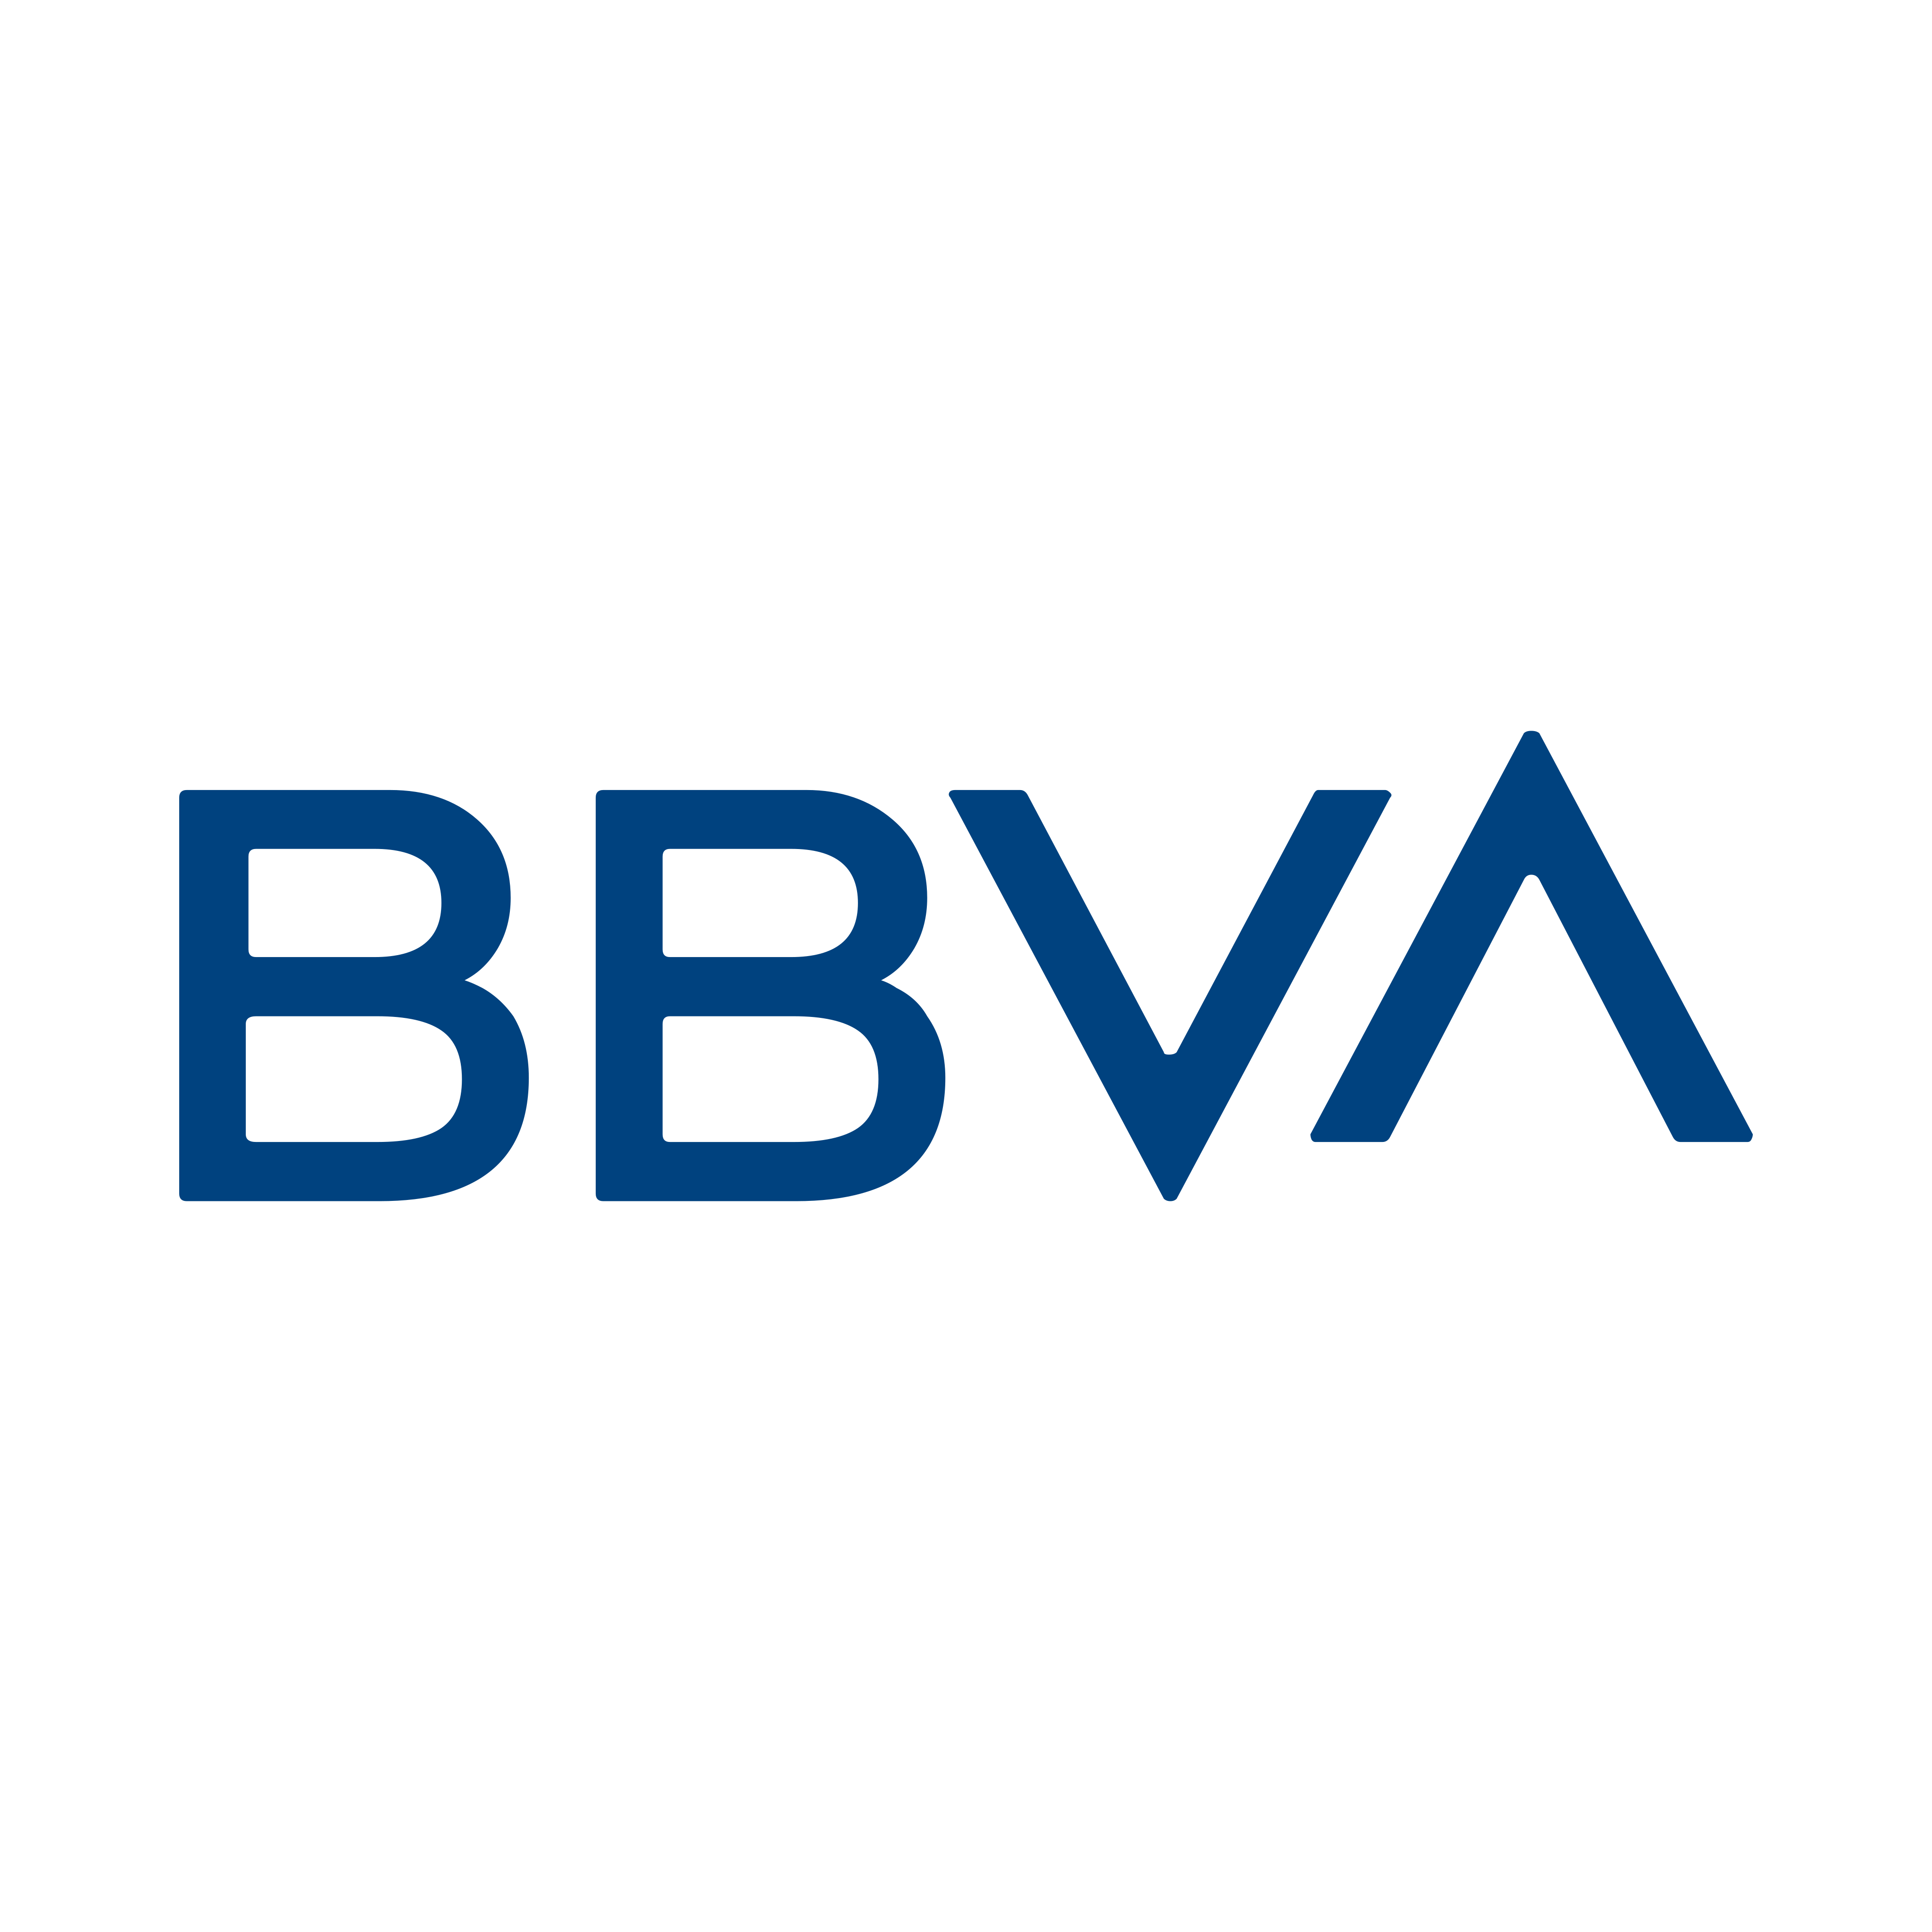 BBVA Logo PNG.